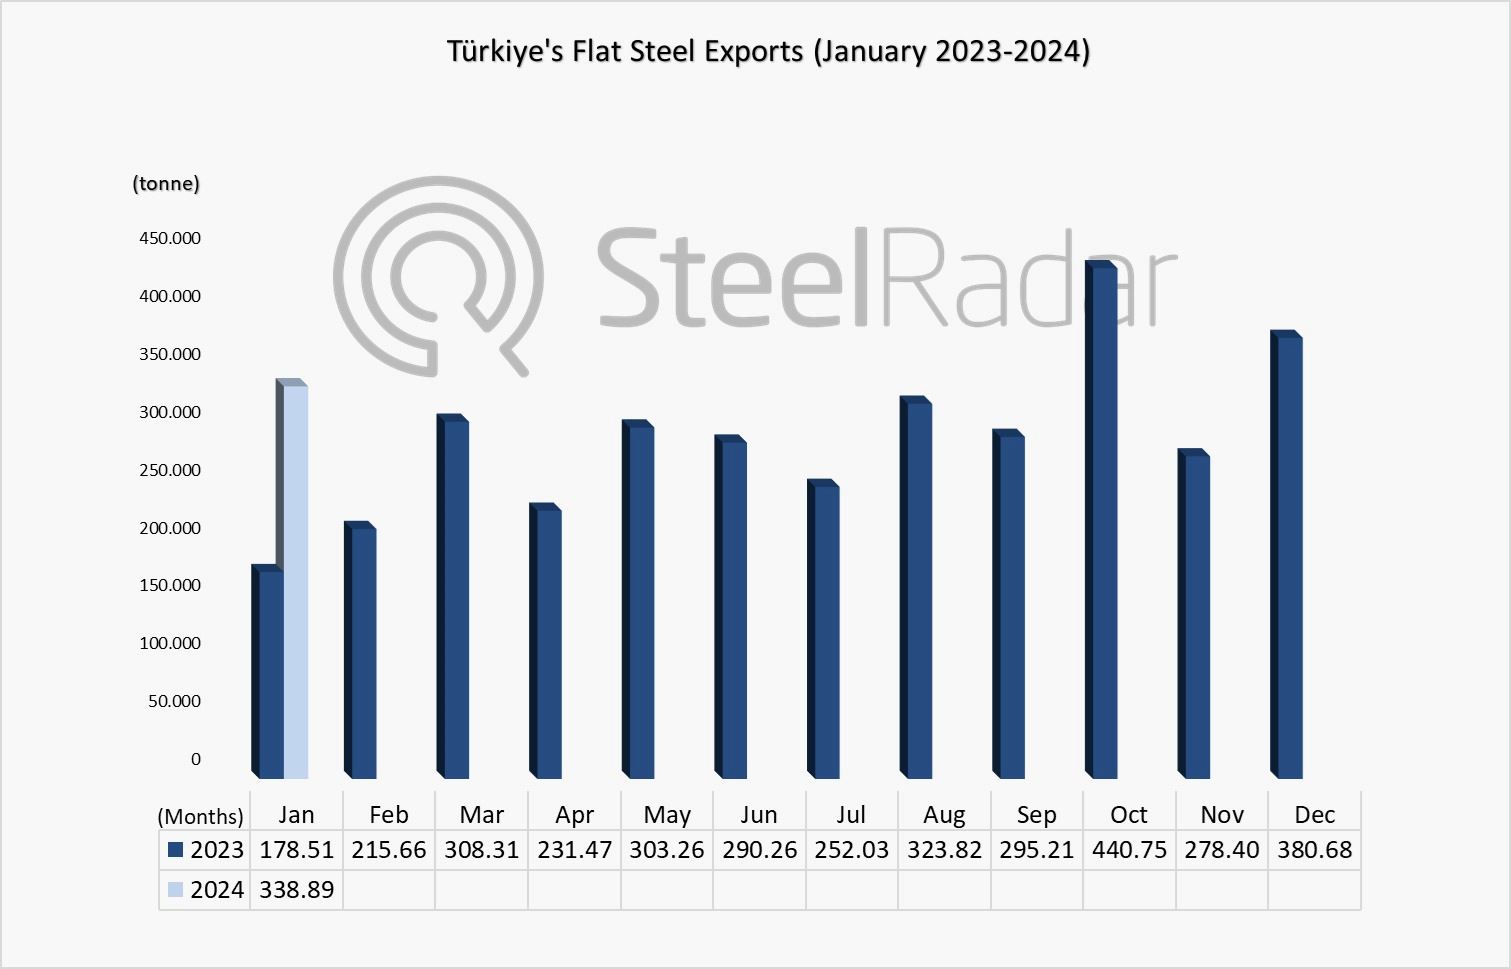 Türkiye's flat steel exports increased by 89.8% in January